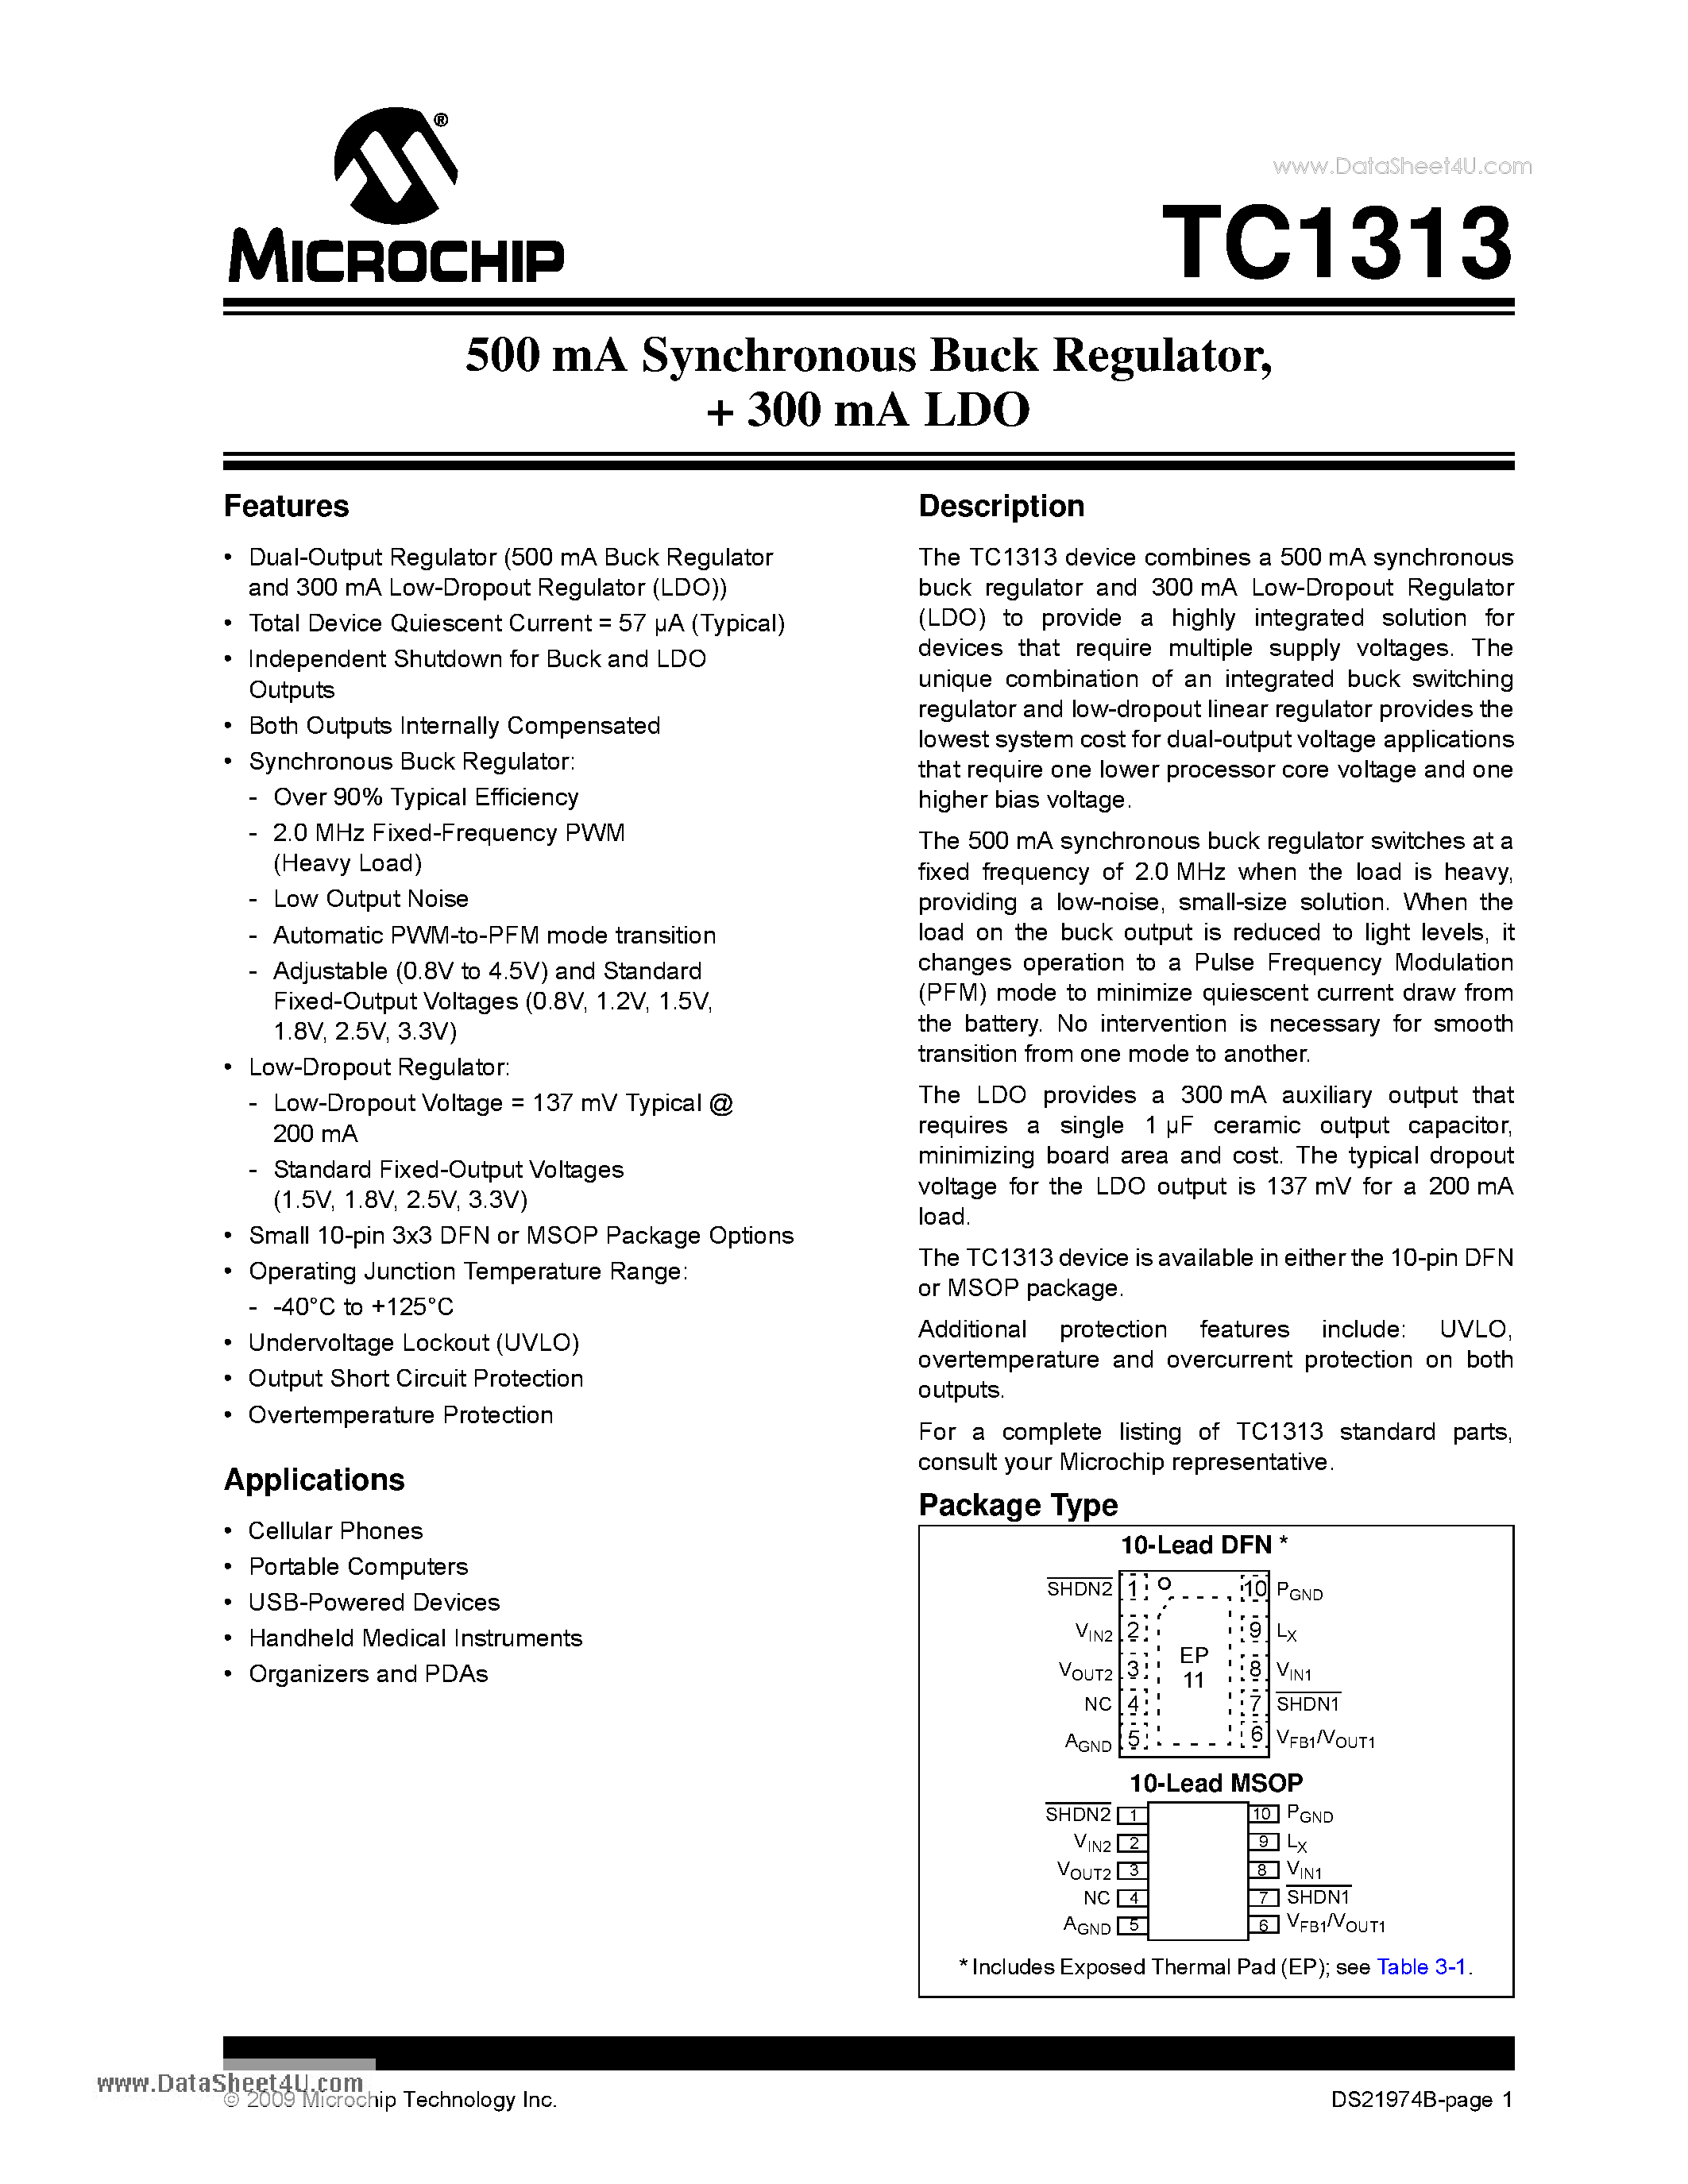 Даташит TC1313 - 500 mA Synchronous Buck Regulator /+ 300 mA LDO страница 1